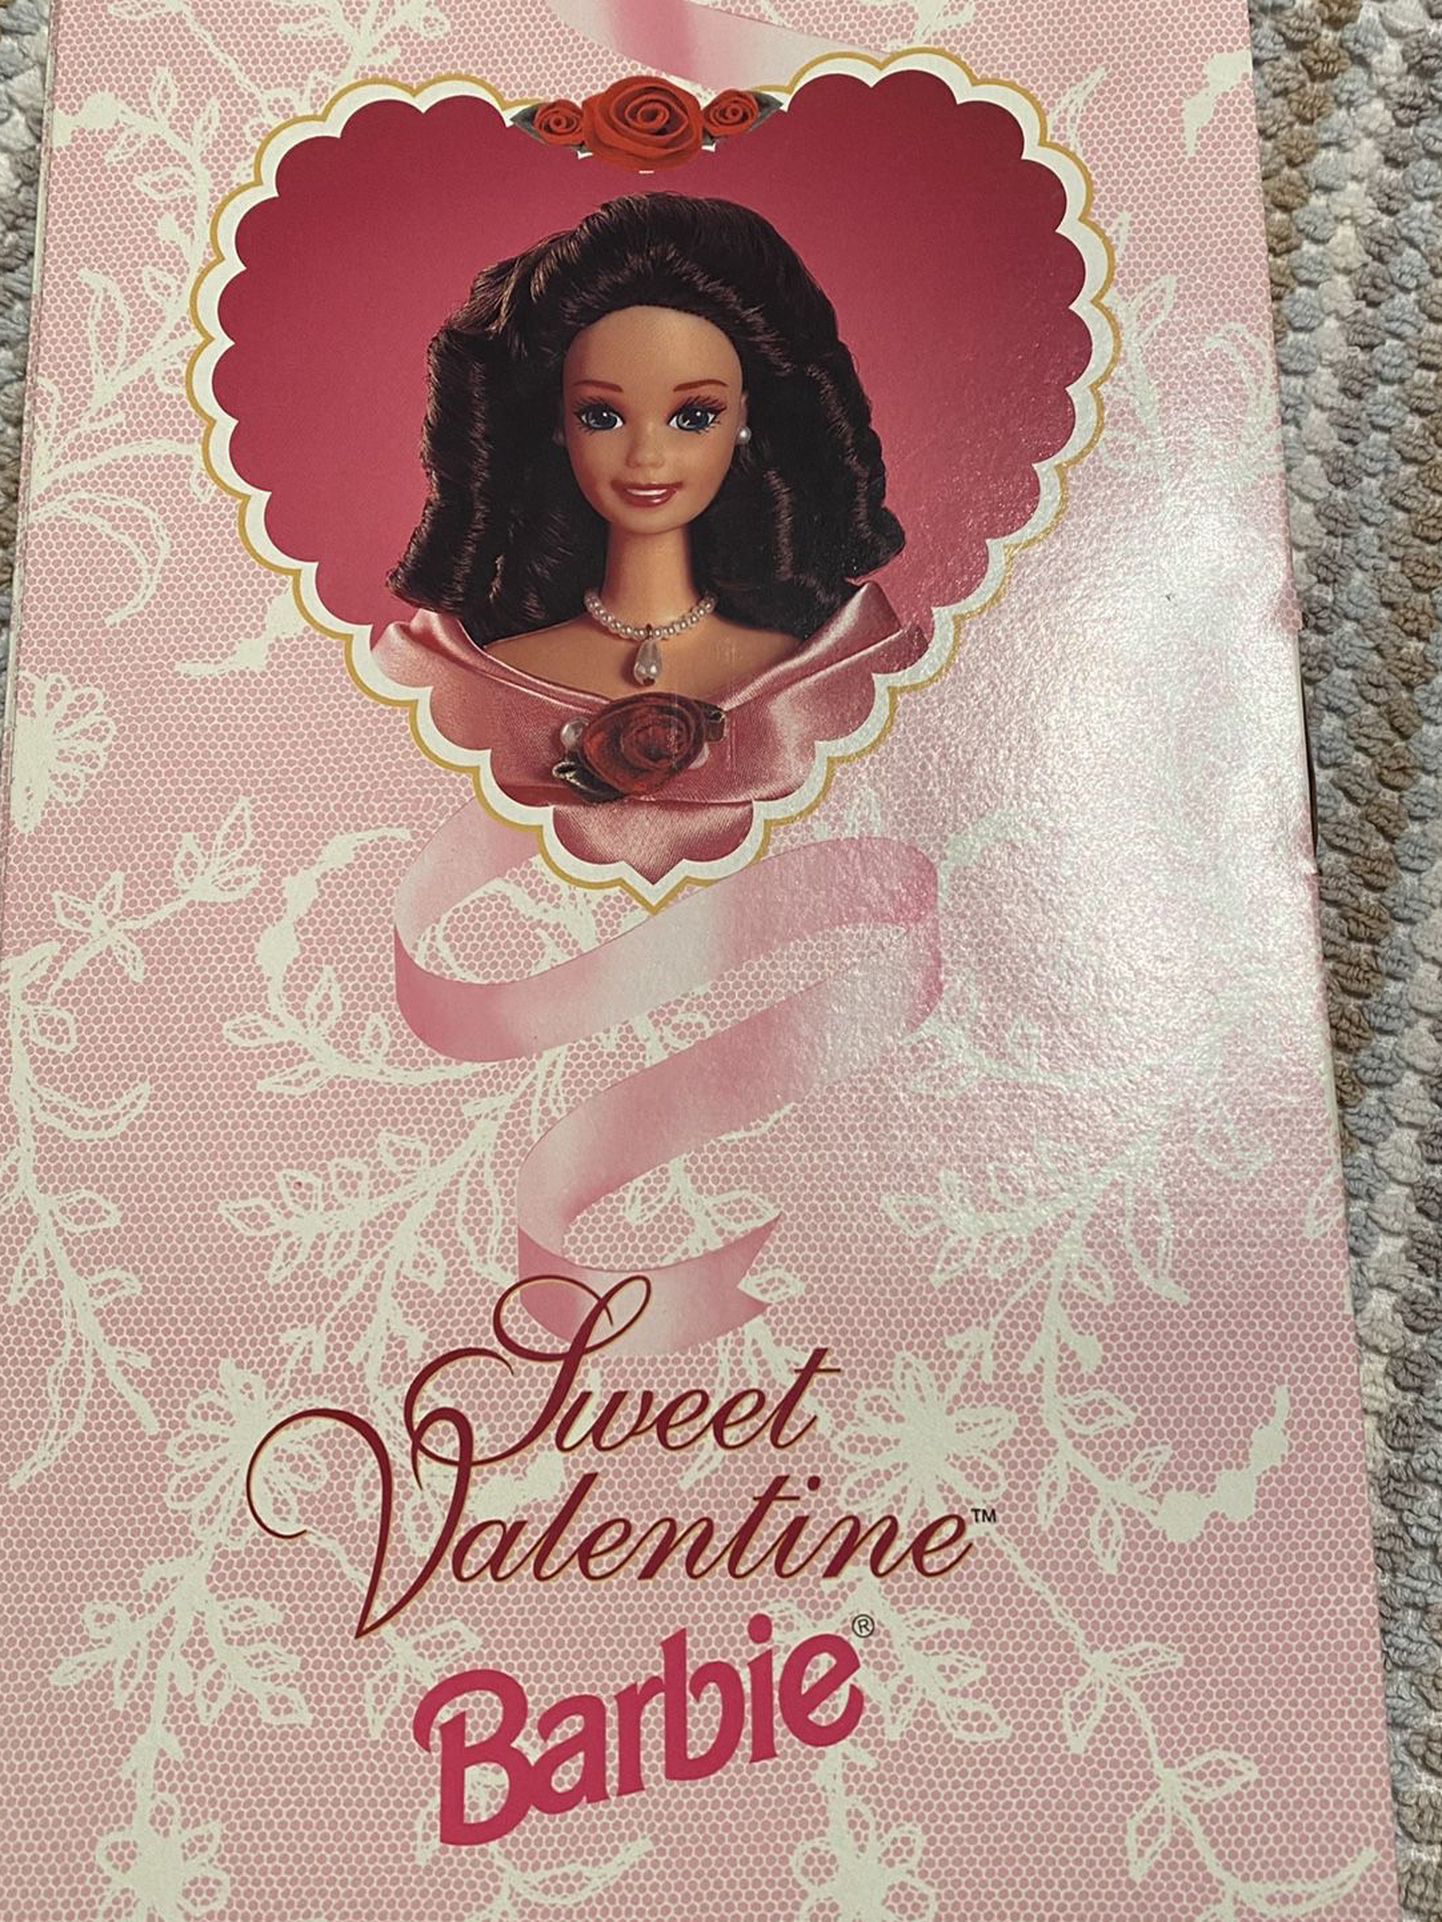 special Edition Hallmark sweet valentine barbie